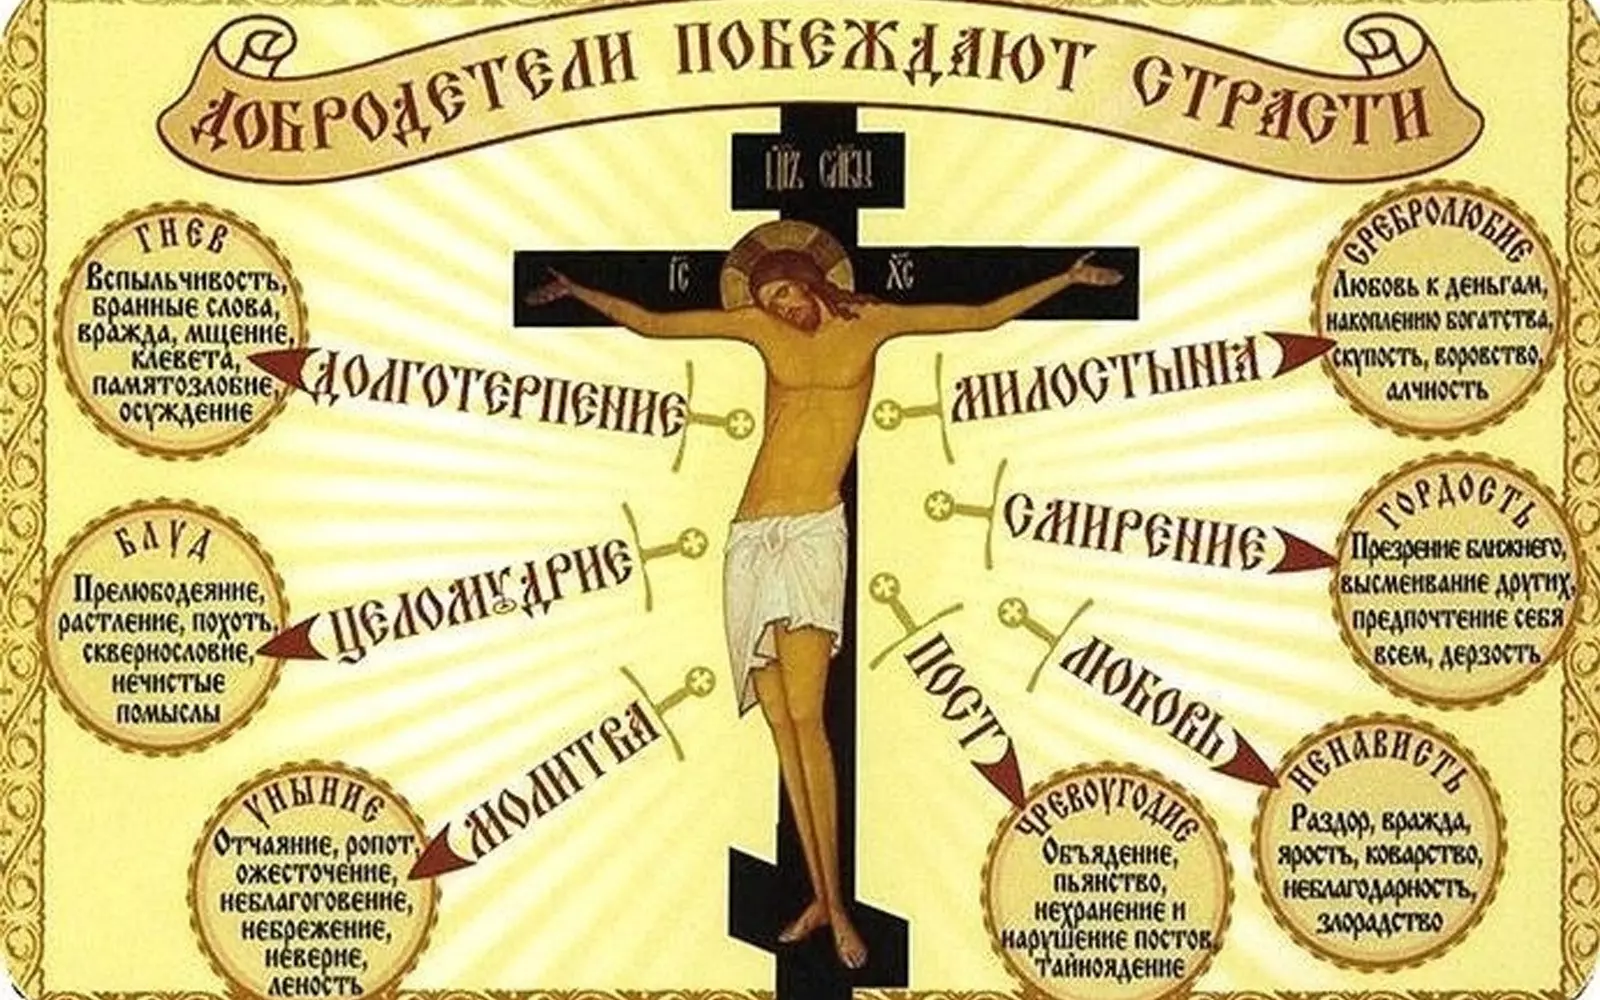 Список 7 смертных грехов в образе православия